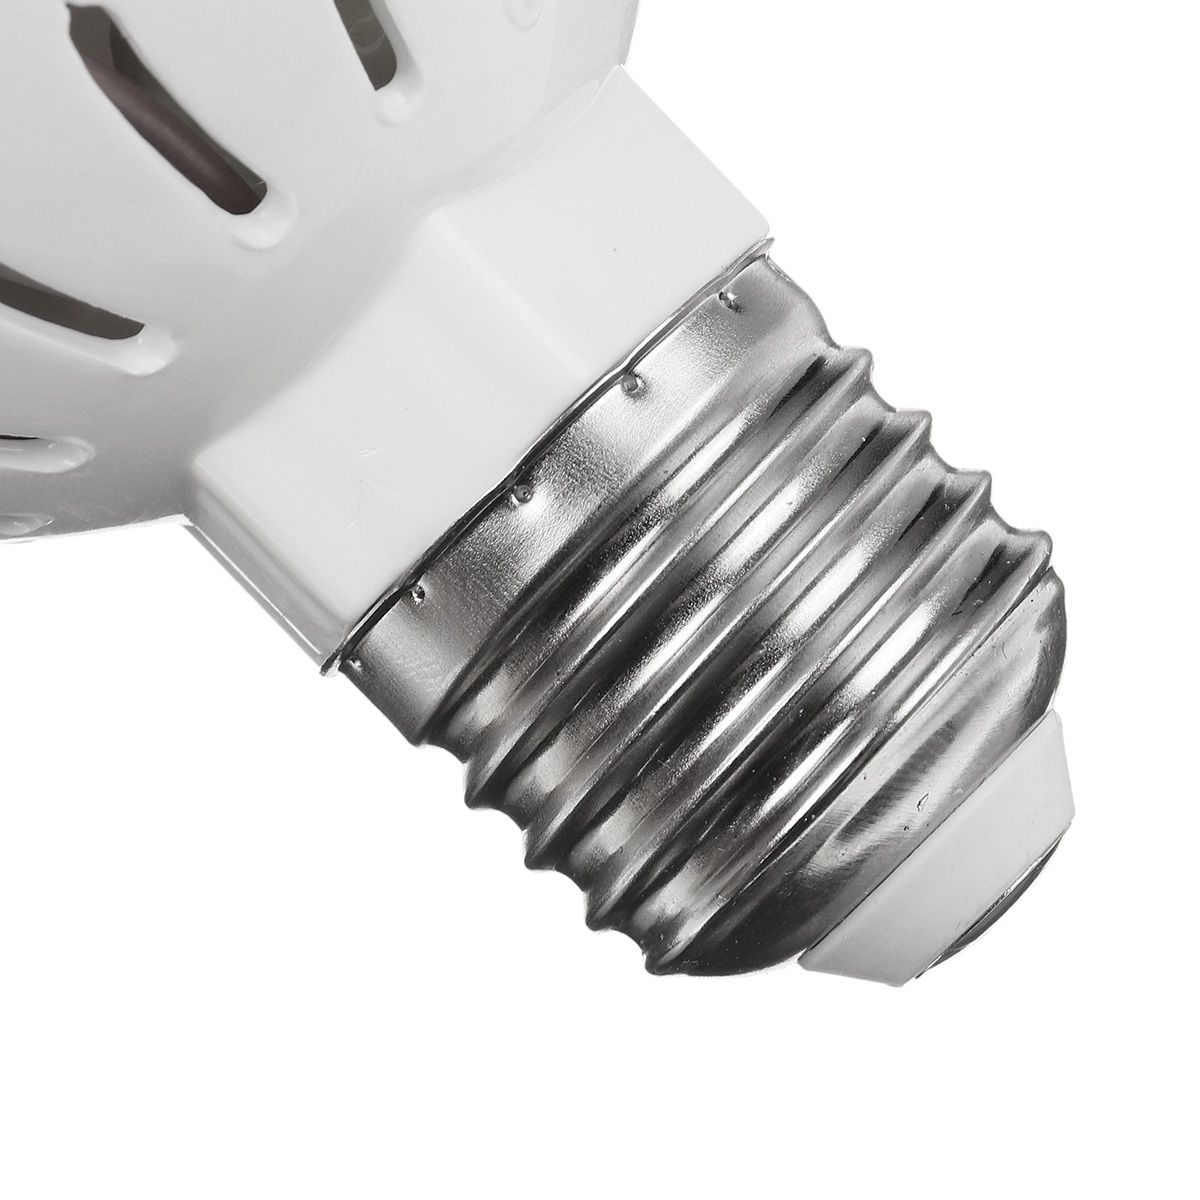 395NM-UV-Sterilization-Lamp-E27-LED-Bulb-Household-Disinfection-Sterilization-Light-for-Indoor-Home--1691906